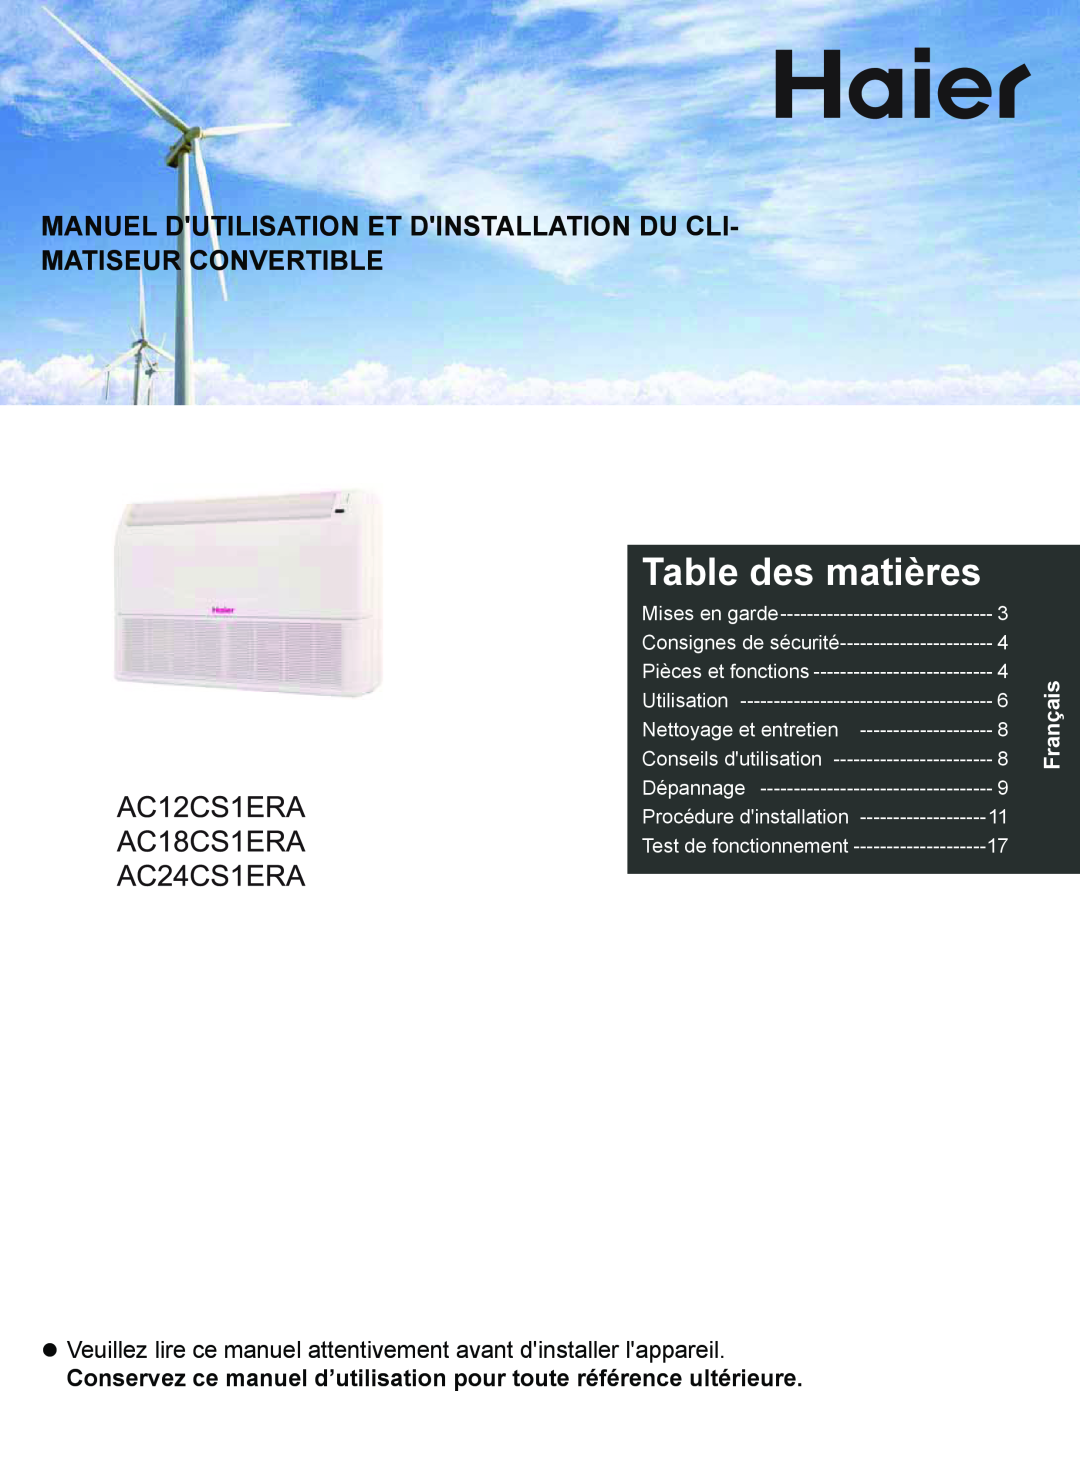 Haier AC18CS1ERA Table des matières, Manuel Dutilisation Et Dinstallation Du Cli, Matiseur Convertible, Français 